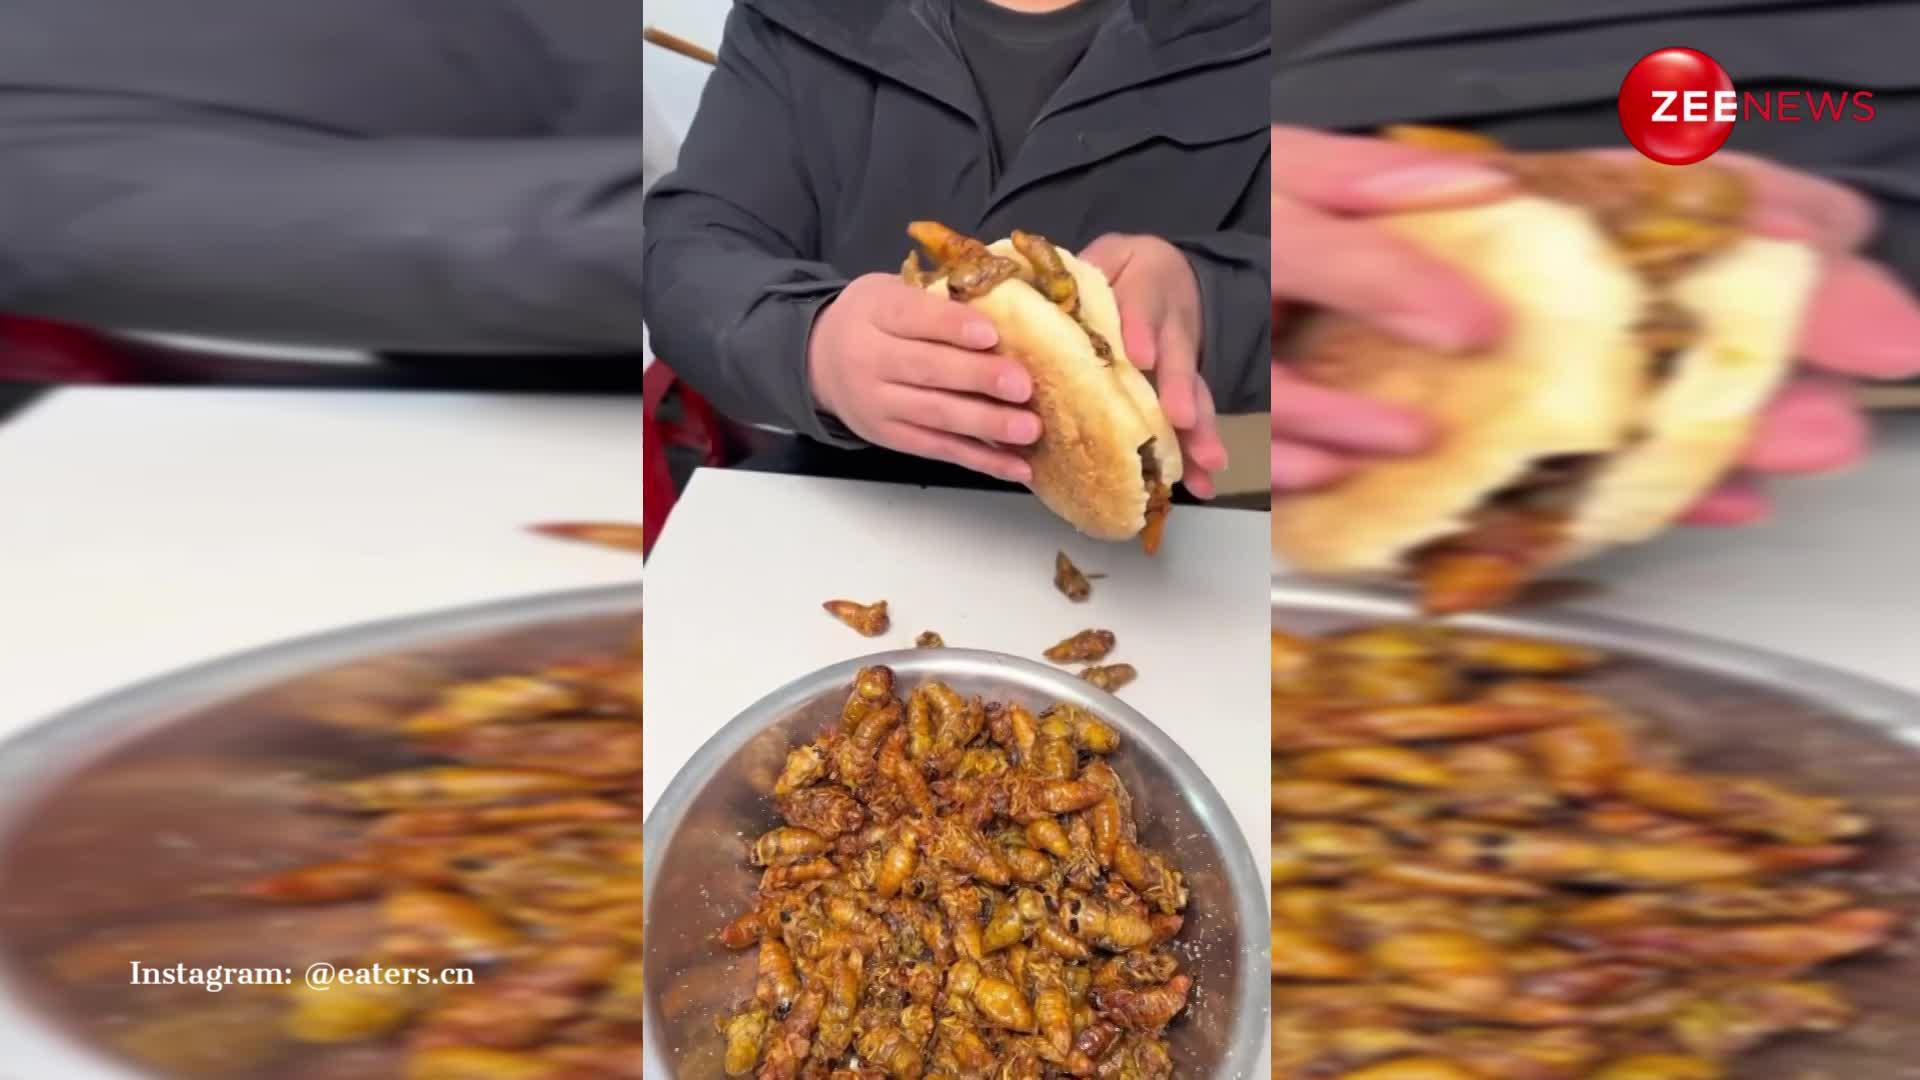 देखते ही देखते कीड़ों का बर्गर बना कर खा गया शख्स, Viral Video पर बोले लोग- अगला वायरस कमिंग सून